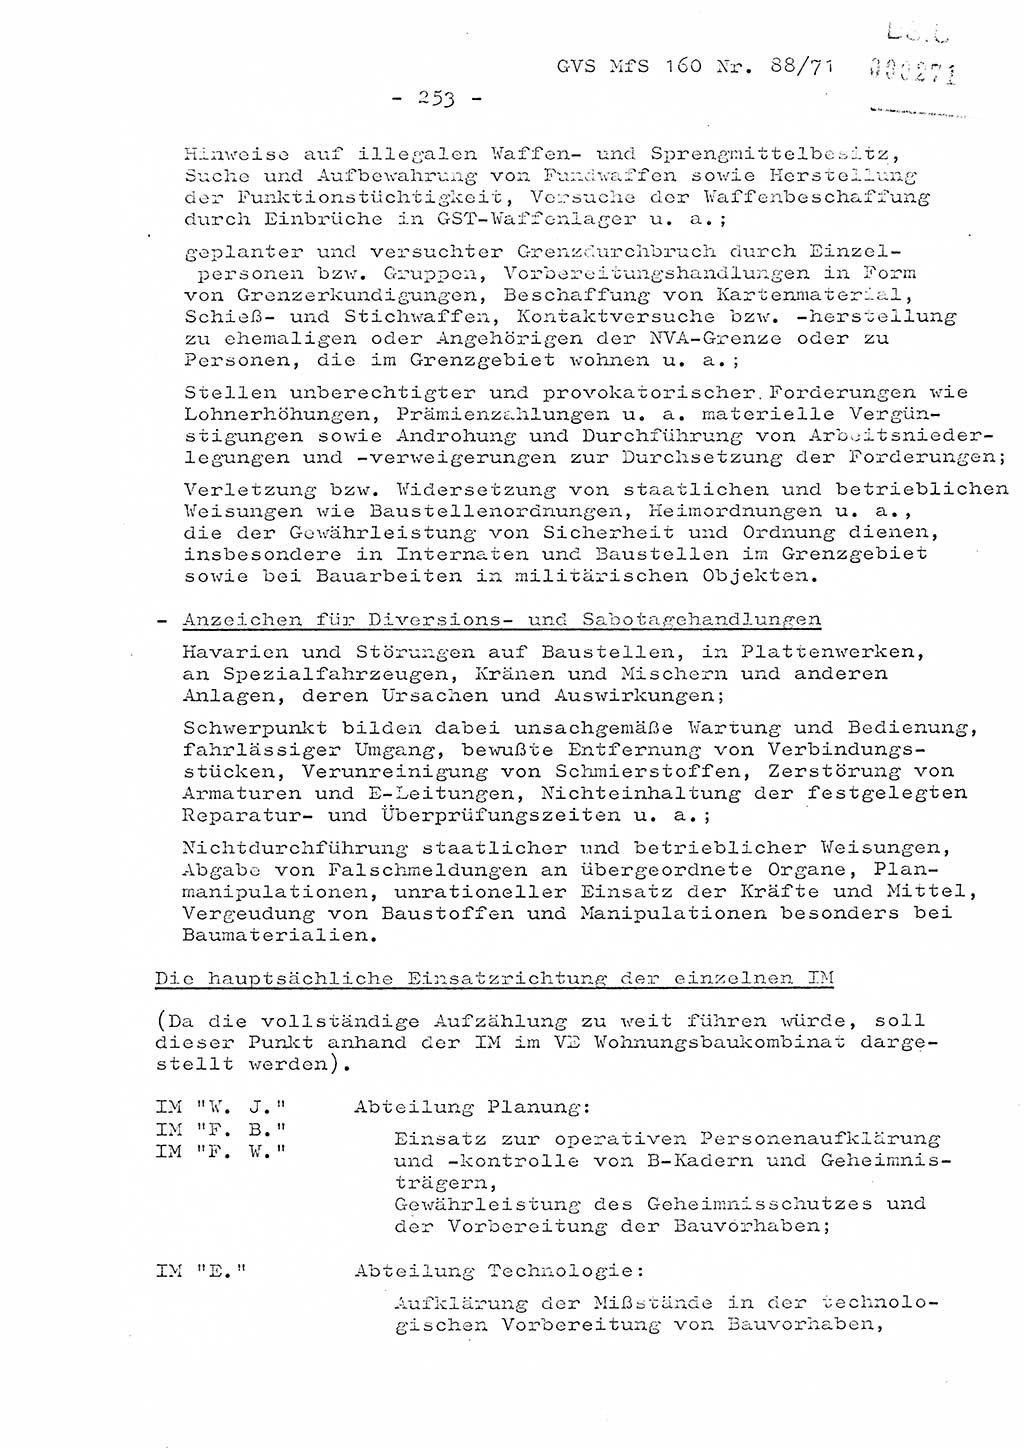 Dissertation Oberstleutnant Josef Schwarz (BV Schwerin), Major Fritz Amm (JHS), Hauptmann Peter Gräßler (JHS), Ministerium für Staatssicherheit (MfS) [Deutsche Demokratische Republik (DDR)], Juristische Hochschule (JHS), Geheime Verschlußsache (GVS) 160-88/71, Potsdam 1972, Seite 253 (Diss. MfS DDR JHS GVS 160-88/71 1972, S. 253)